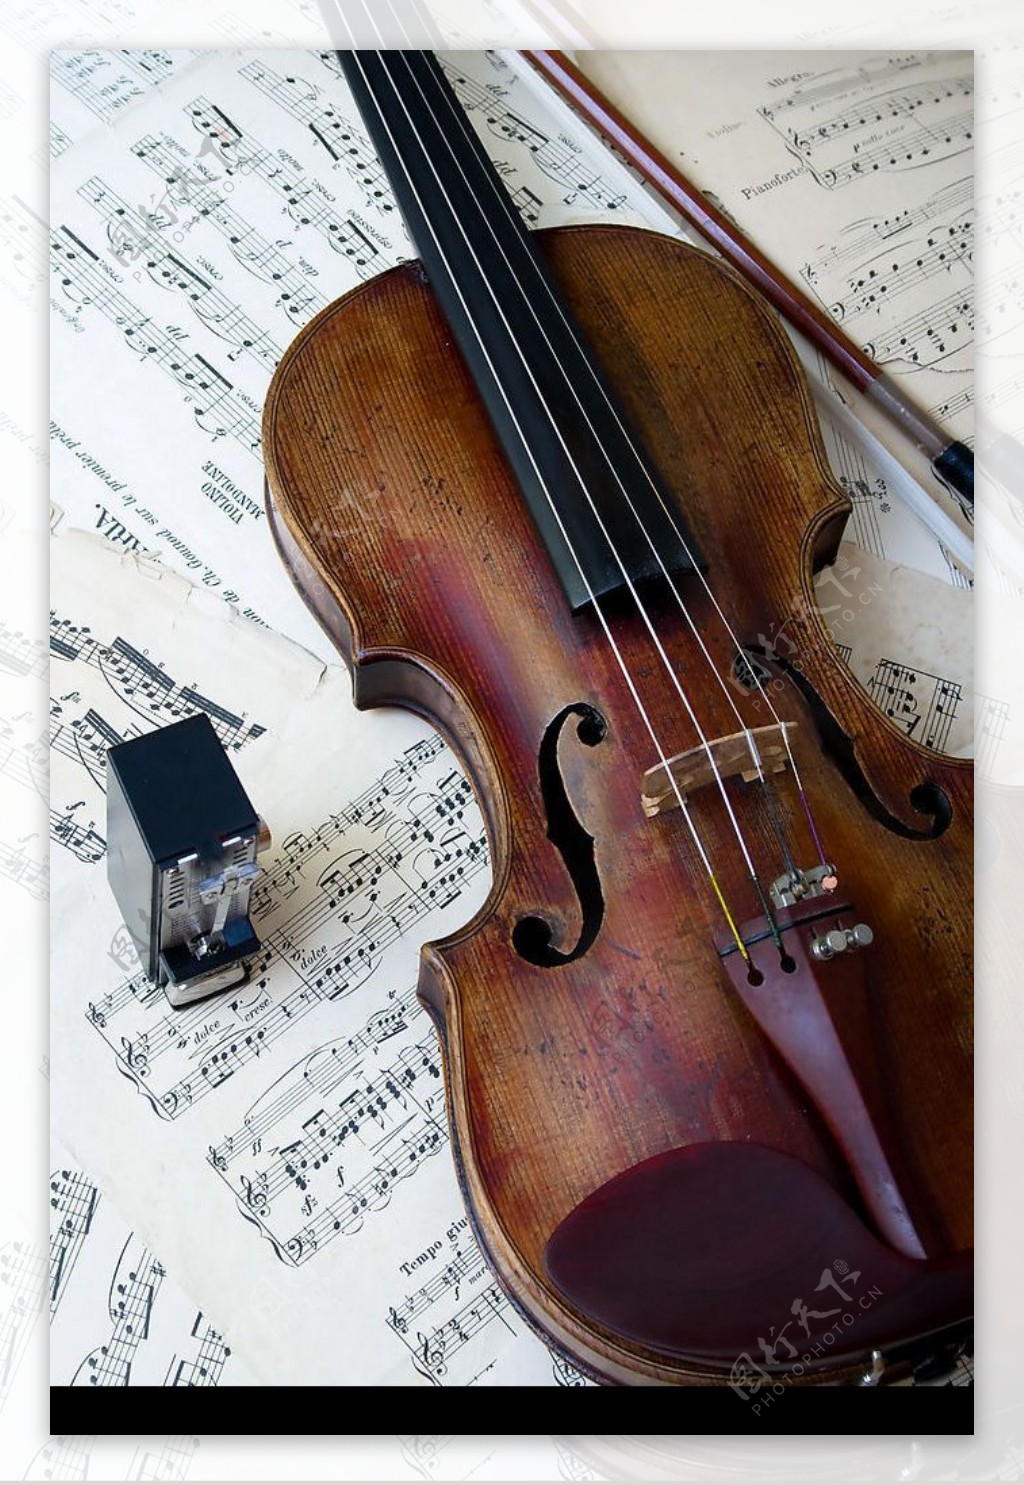 壁纸1024×768小提琴图片壁纸 beautiful Violin Desktop Wallpaper壁纸,唯美艺术摄影壁纸图片-摄影壁纸 ...